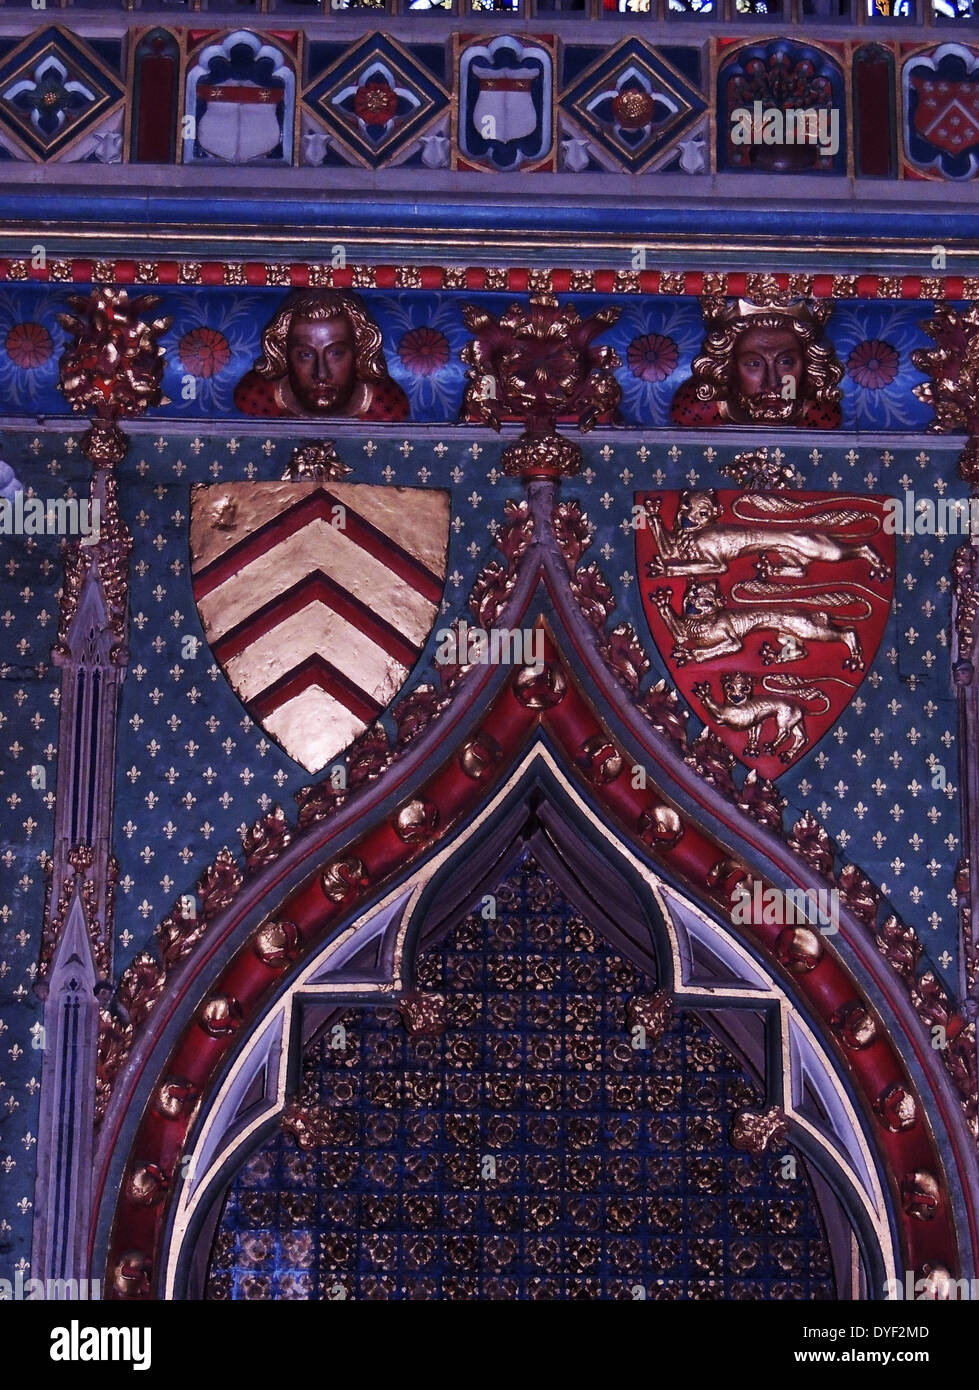 Östlichen cathefral Marienkapelle, Bristol, England. Das Gebäude des östlichen Marienkapelle begann im Jahr 1298 und war Teil einer Neuerstellung der östlichen Hälfte des ursprünglichen normannische Kirche. Die Lackierung stammt aus dem Jahr 1935, kann aber auch die kräftigen Farben der ursprünglichen mittelalterlichen Gebäude widerspiegeln. Der Osten Fenster wiederhergestellt wurde, enthält aber eine spektakuläre Anzeige der Heraldik im vierzehnten Jahrhundert, Glasmalerei, einschließlich der Arme von Lord Berkeley. Die Arme können auch auf der retabel gesehen werden, zusammen mit dem Abzeichen der Clare Familie und das königliche Wappen von England. Stockfoto